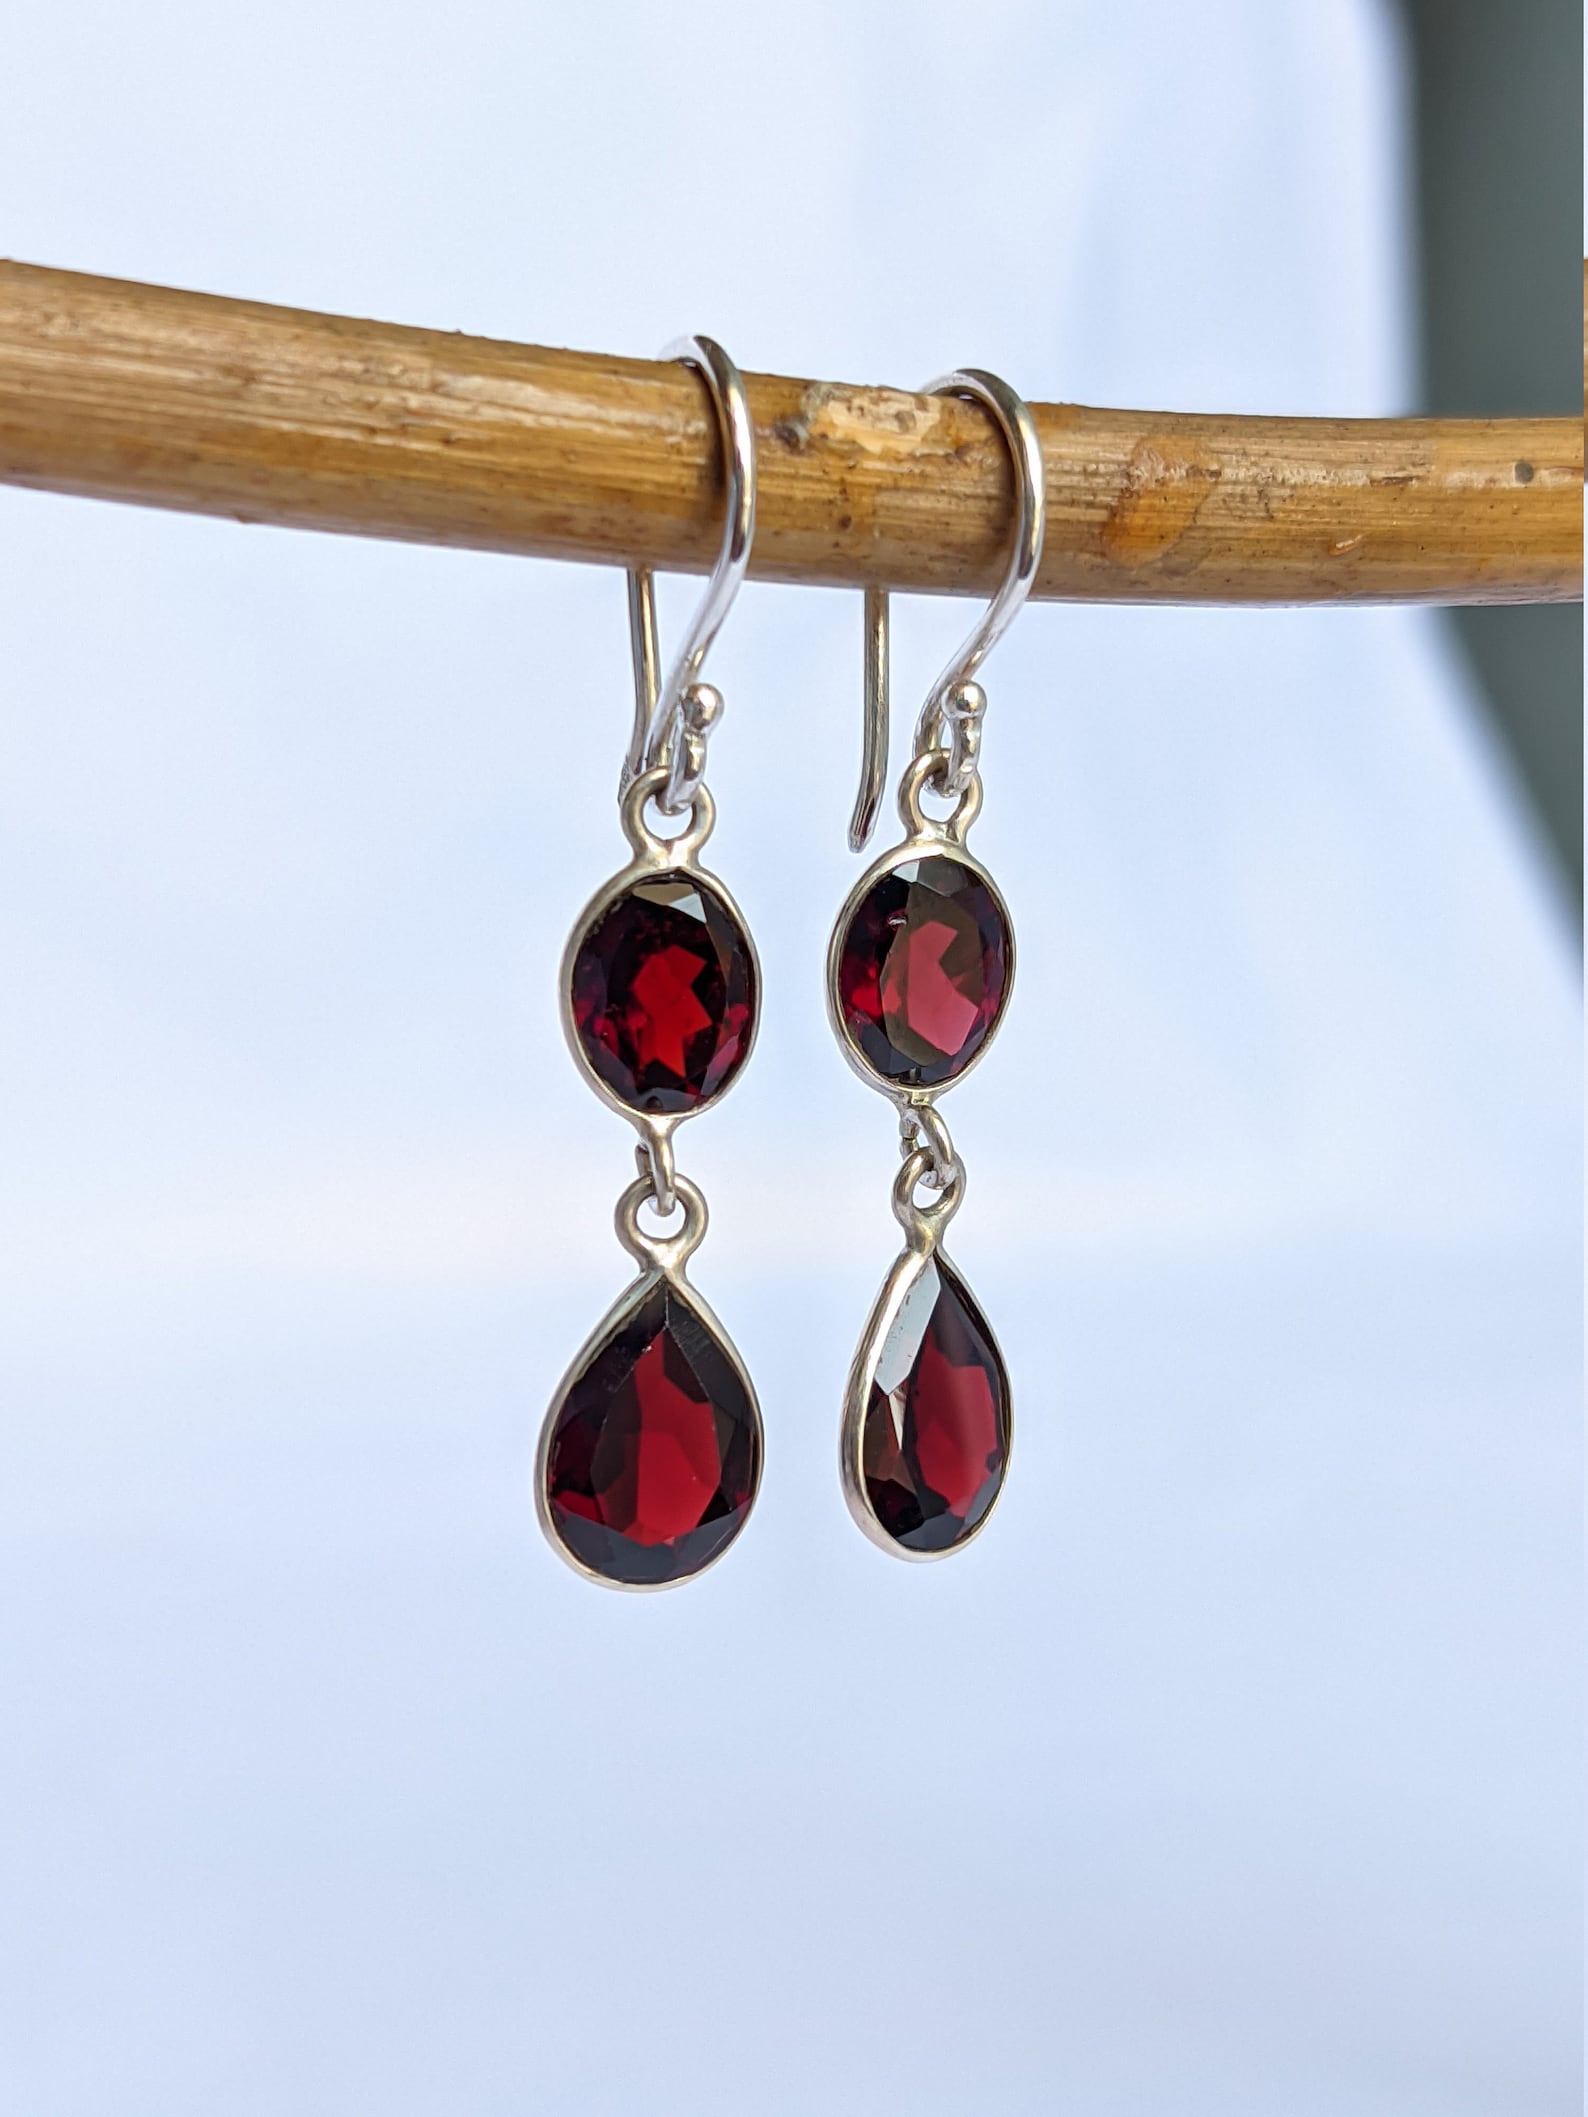 Red Garnet Dangle Earrings 925 Sterling Silver Two Stone - Etsy UK